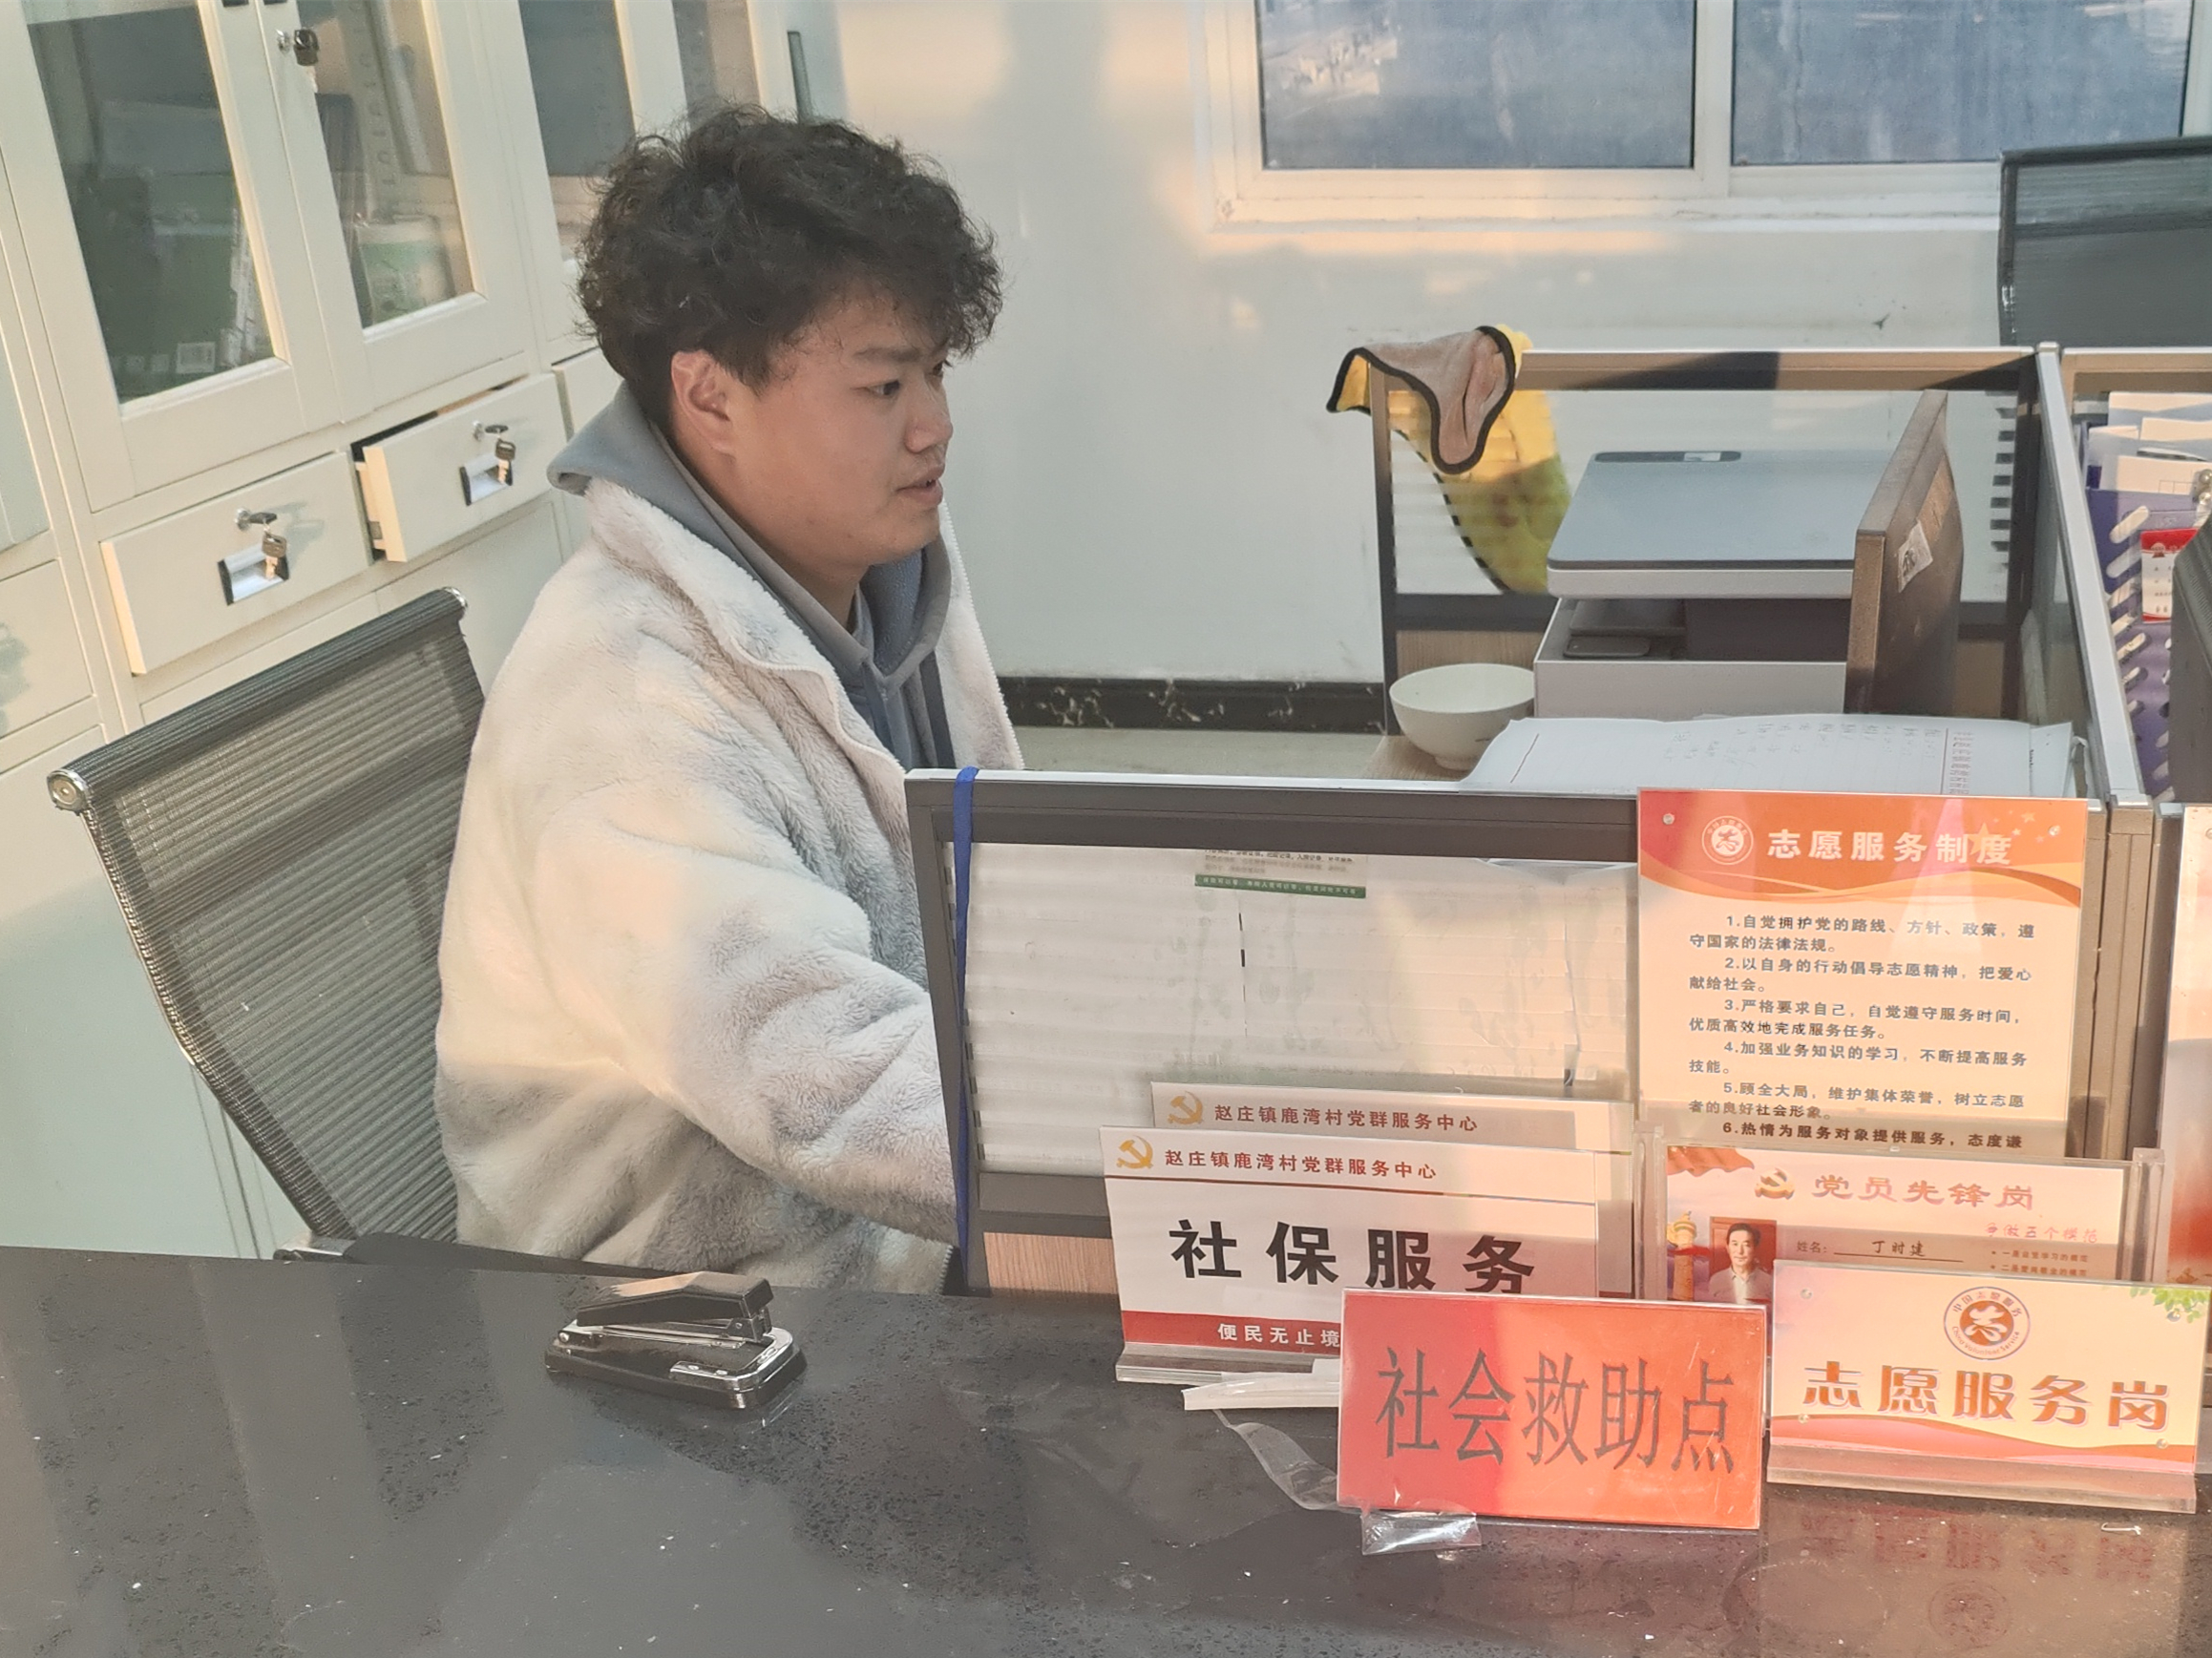 图为学生陆宇浩在江苏省徐州市丰县赵庄镇鹿湾村委会进行寒假社会实践，他主要负责整理村民信息并录入电脑系统，处理和撰写一些通知文件。